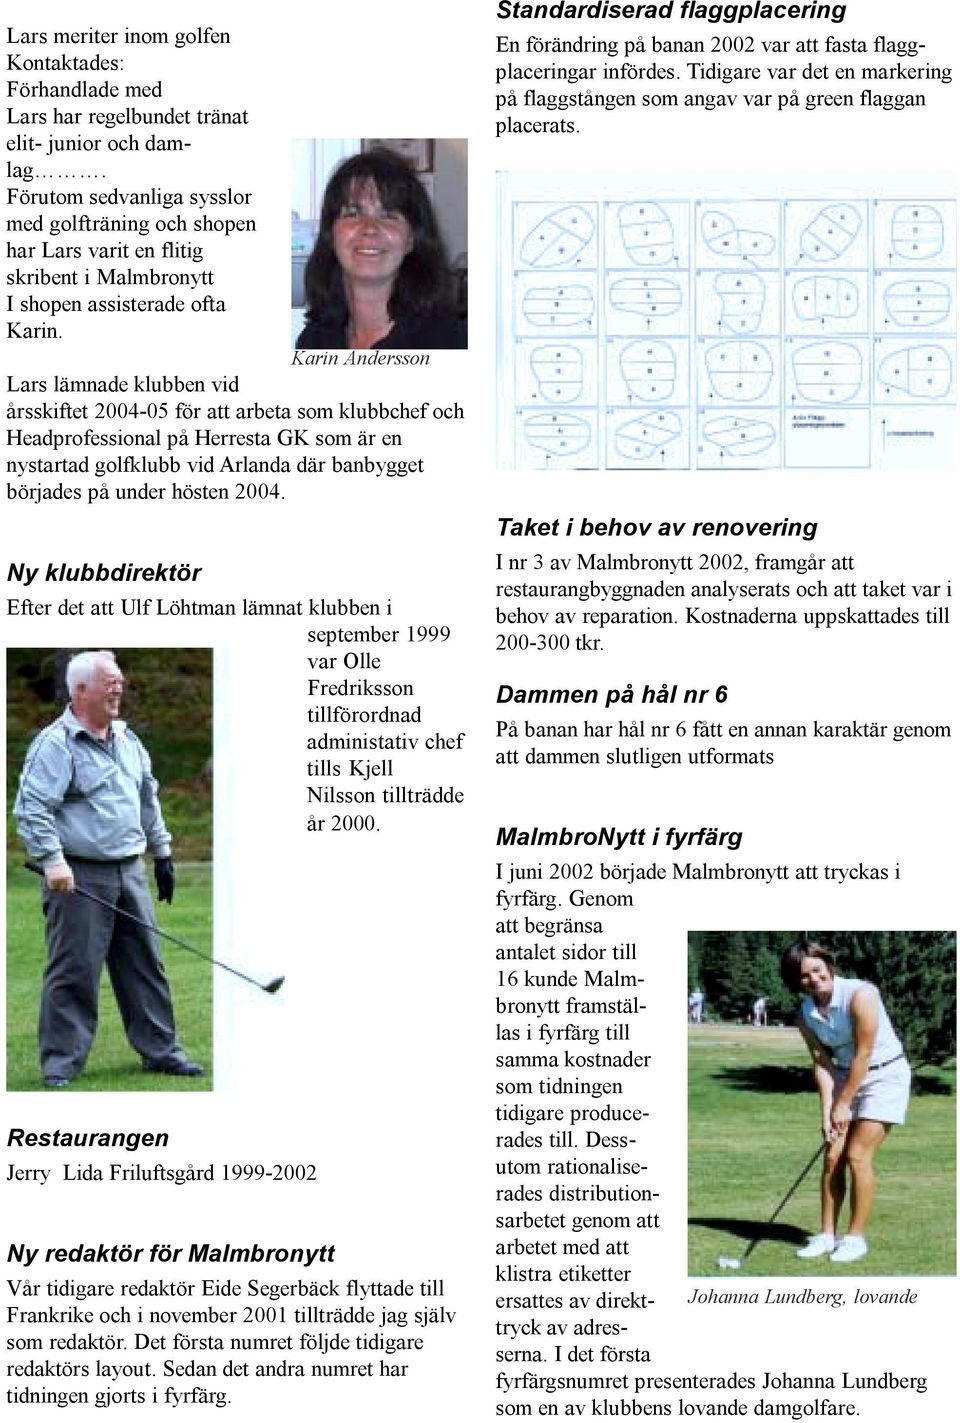 Karin Andersson Lars lämnade klubben vid årsskiftet 2004-05 för att arbeta som klubbchef och Headprofessional på Herresta GK som är en nystartad golfklubb vid Arlanda där banbygget börjades på under